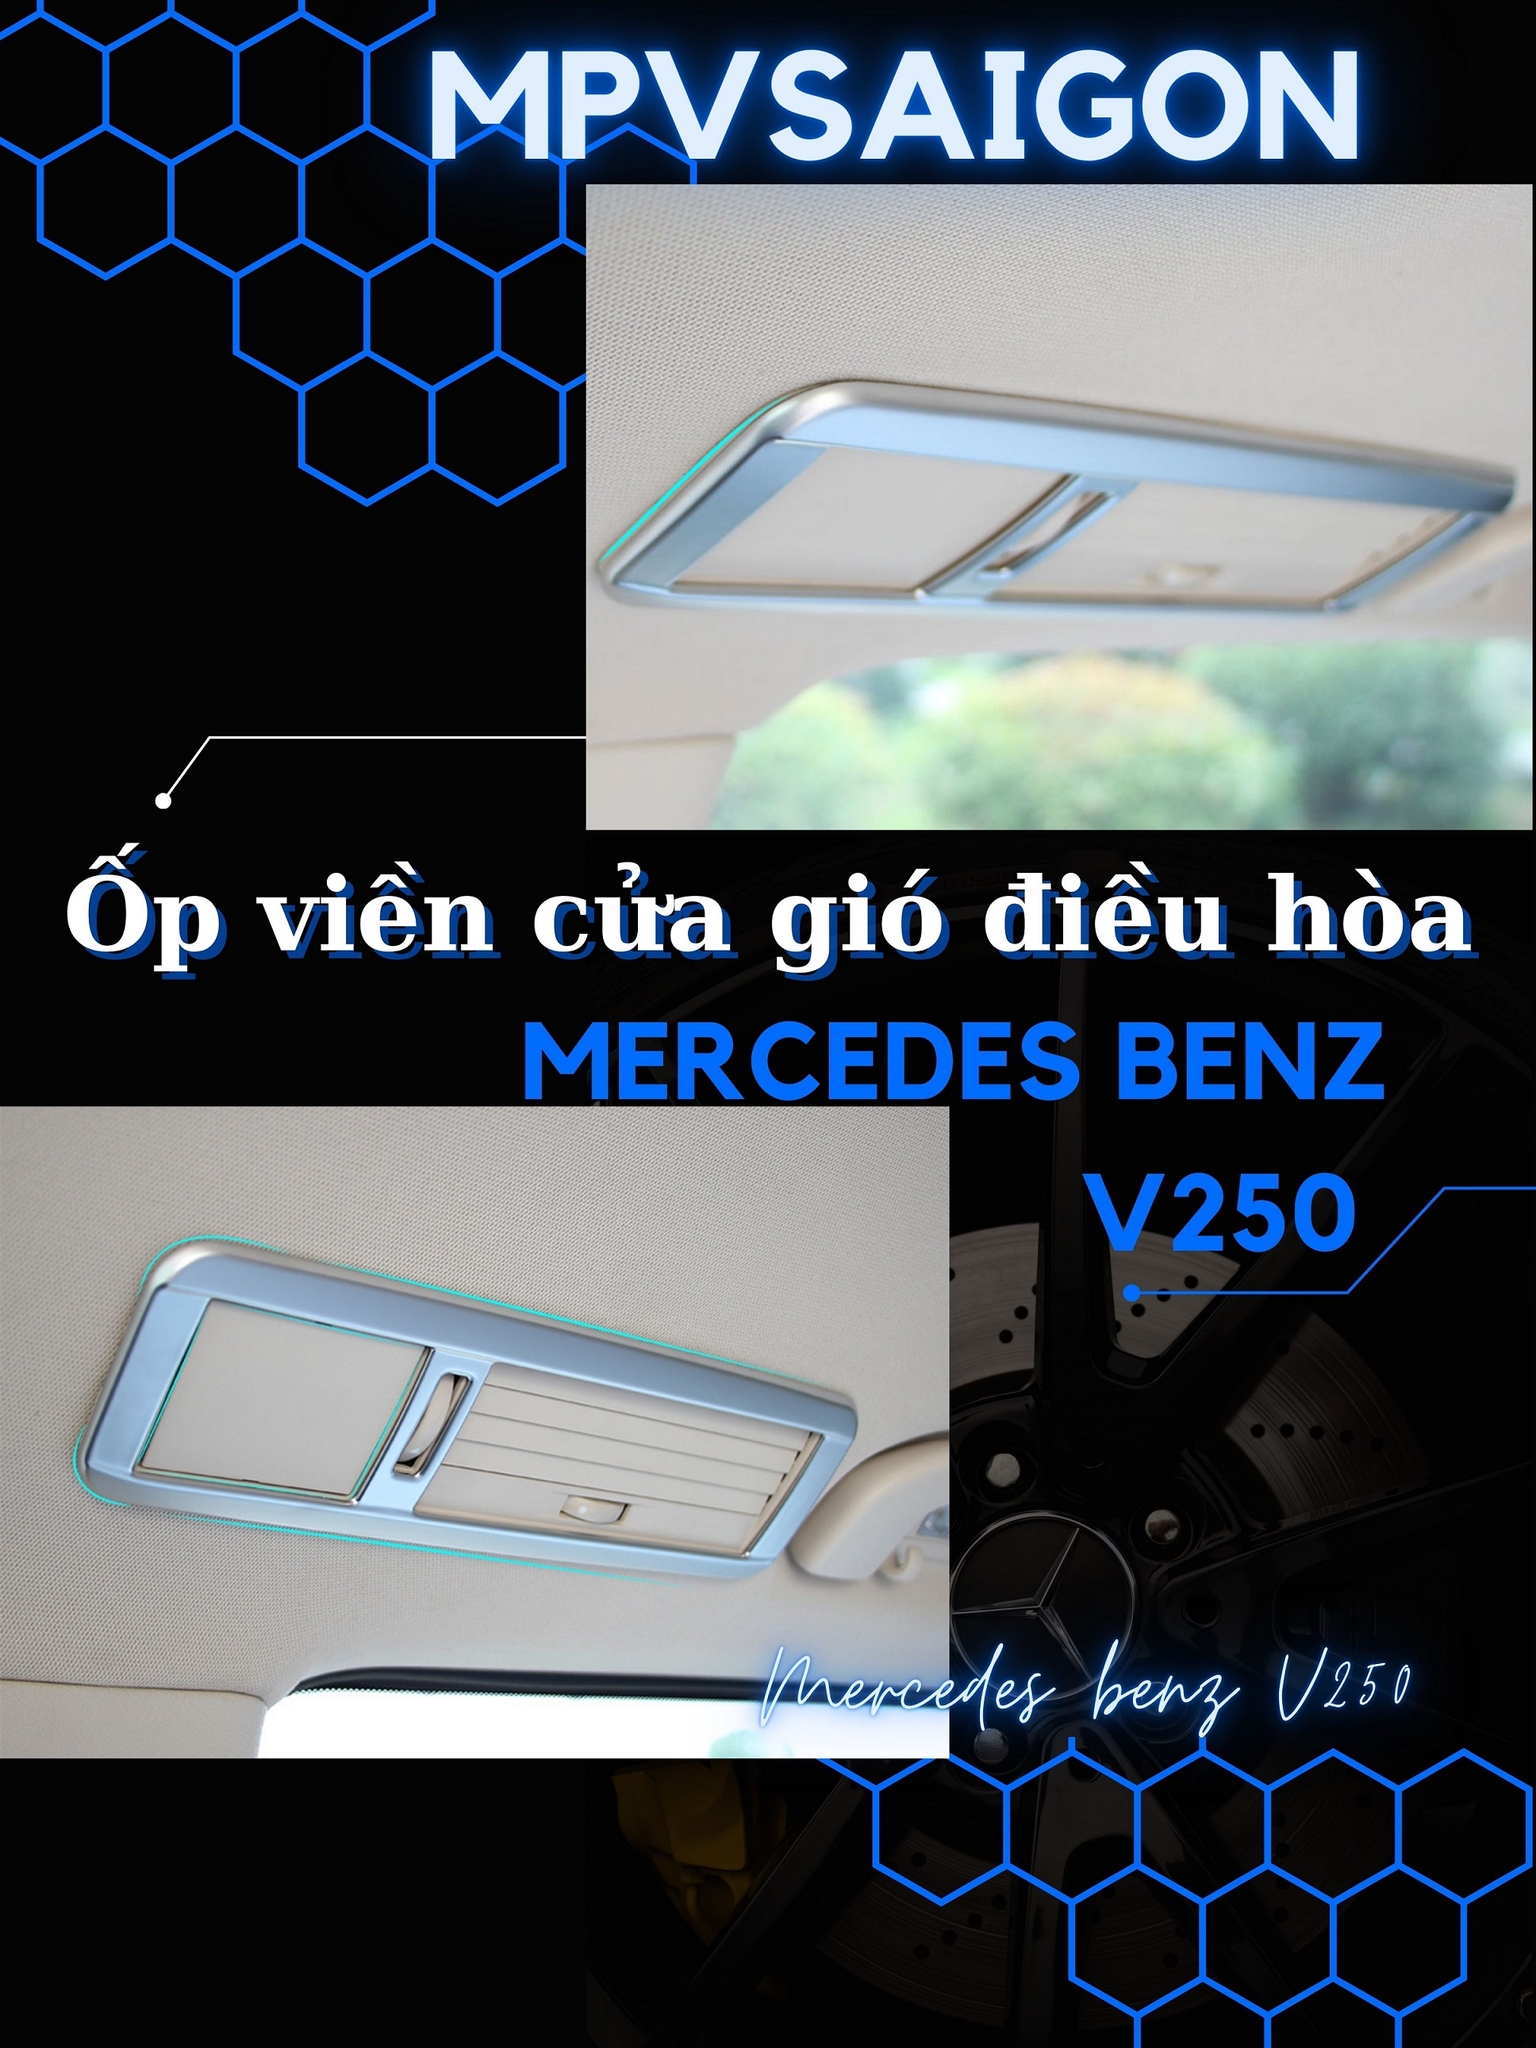 Ốp cửa gió điều hòa Mercedes Benz V250